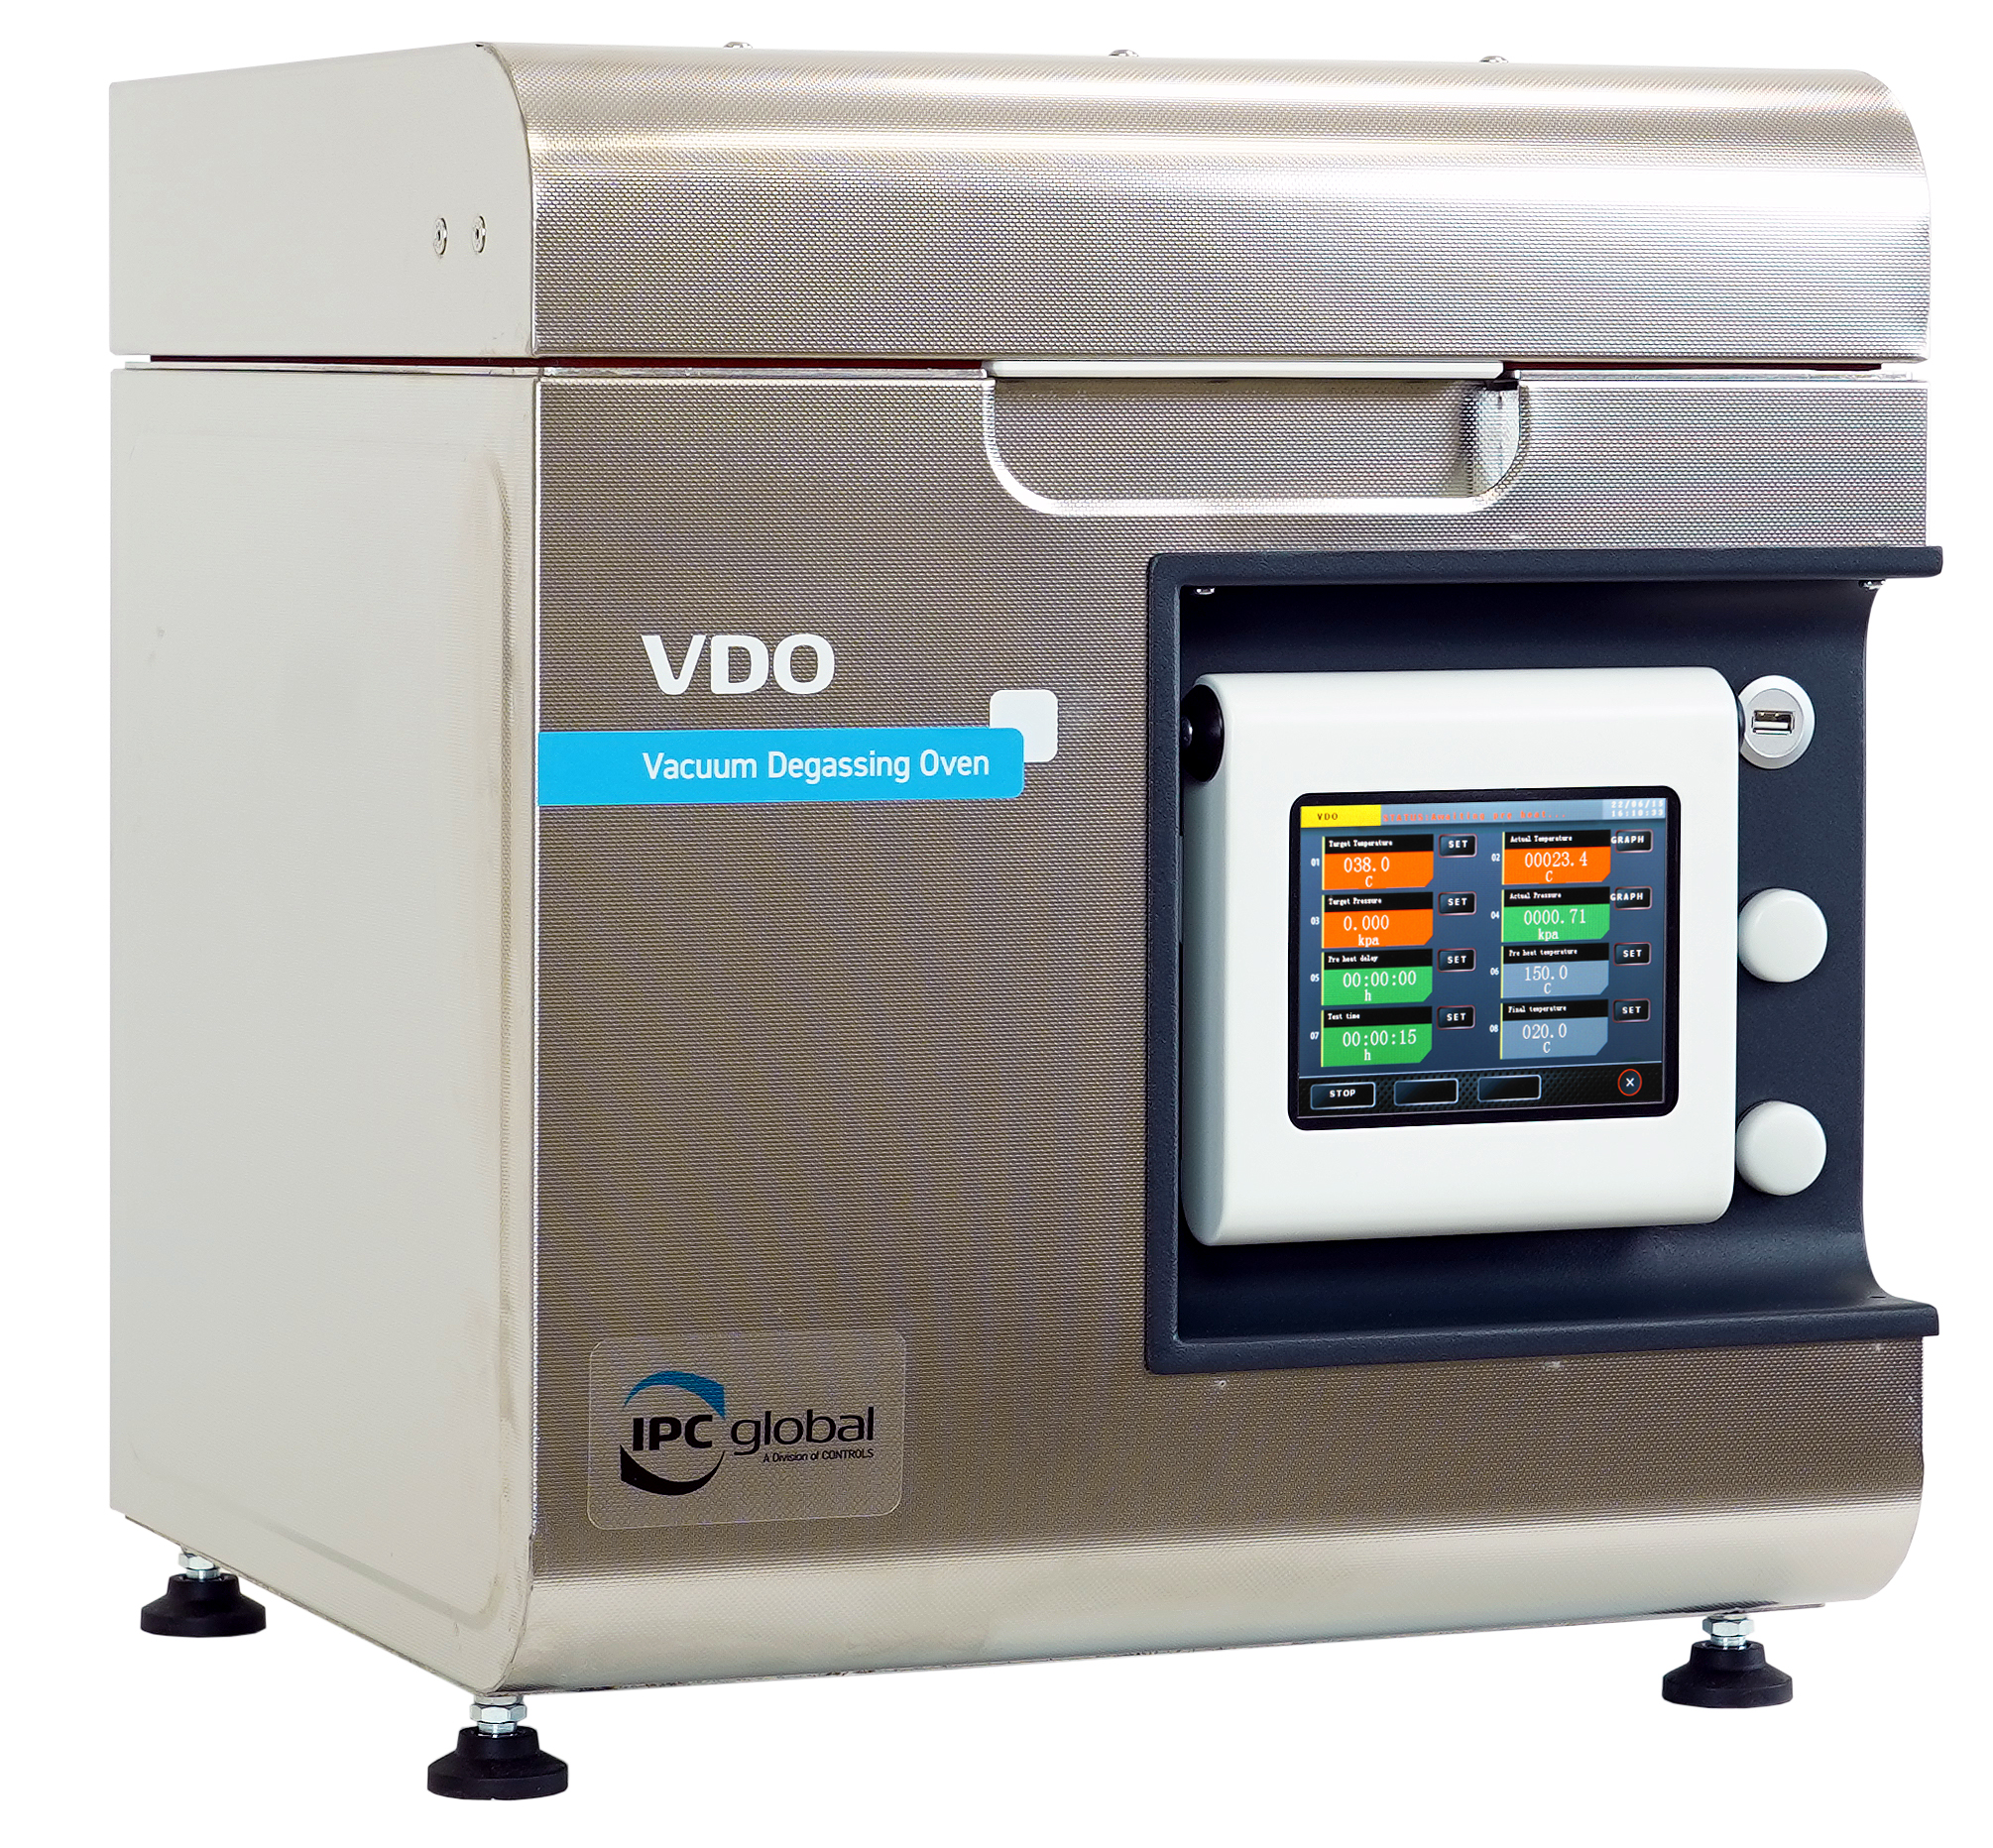 CONT 81-PV2610 Vacuum Degassing oven (VDO) CONTROLS